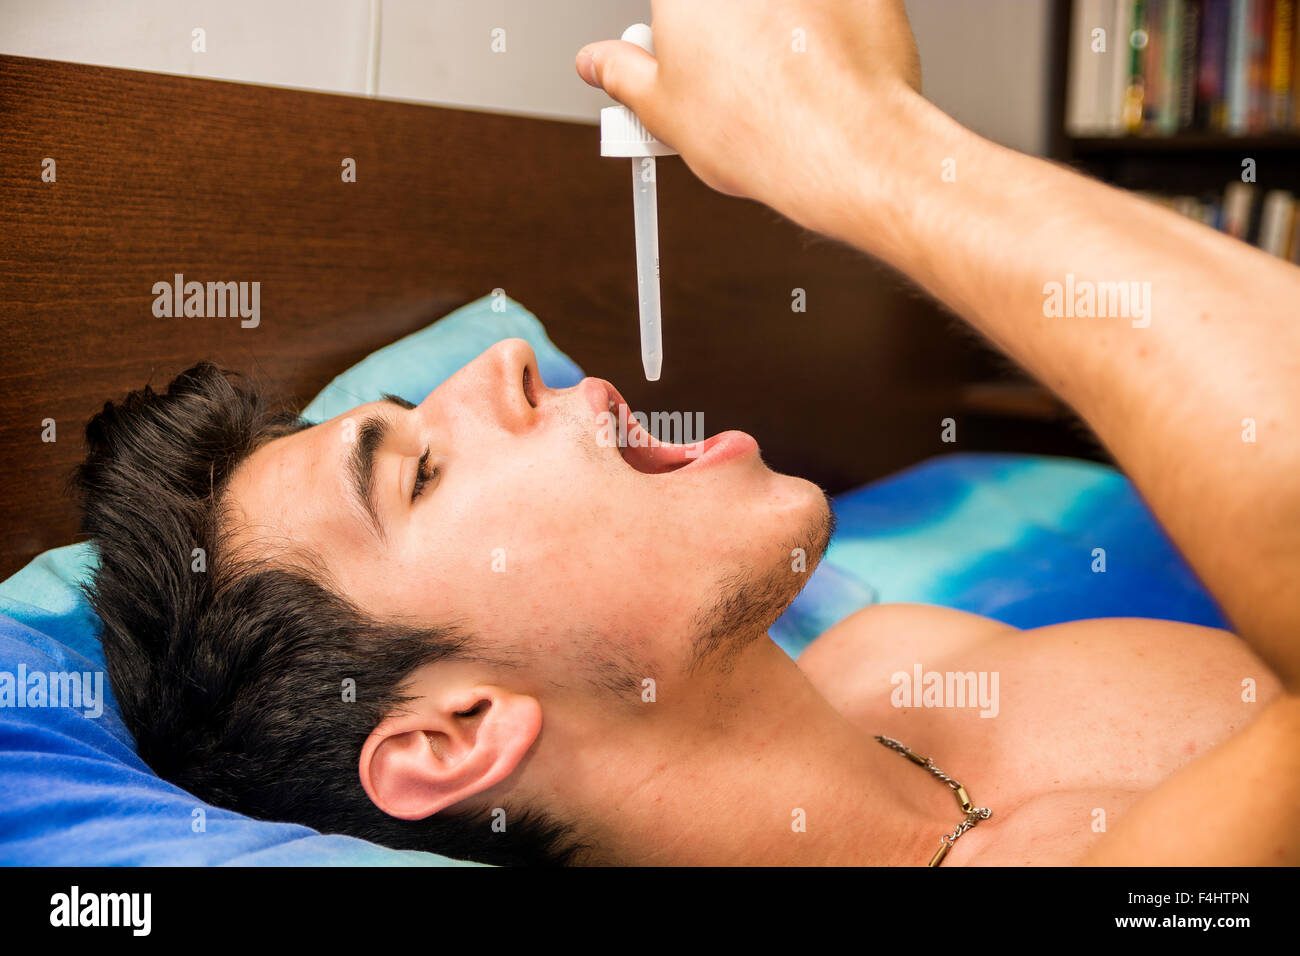 Krank oder unwohl junger Mann mit Pipette Pipette in den Mund für Medizin, medikamentöse Behandlung, beim liegen im Bett Stockfoto